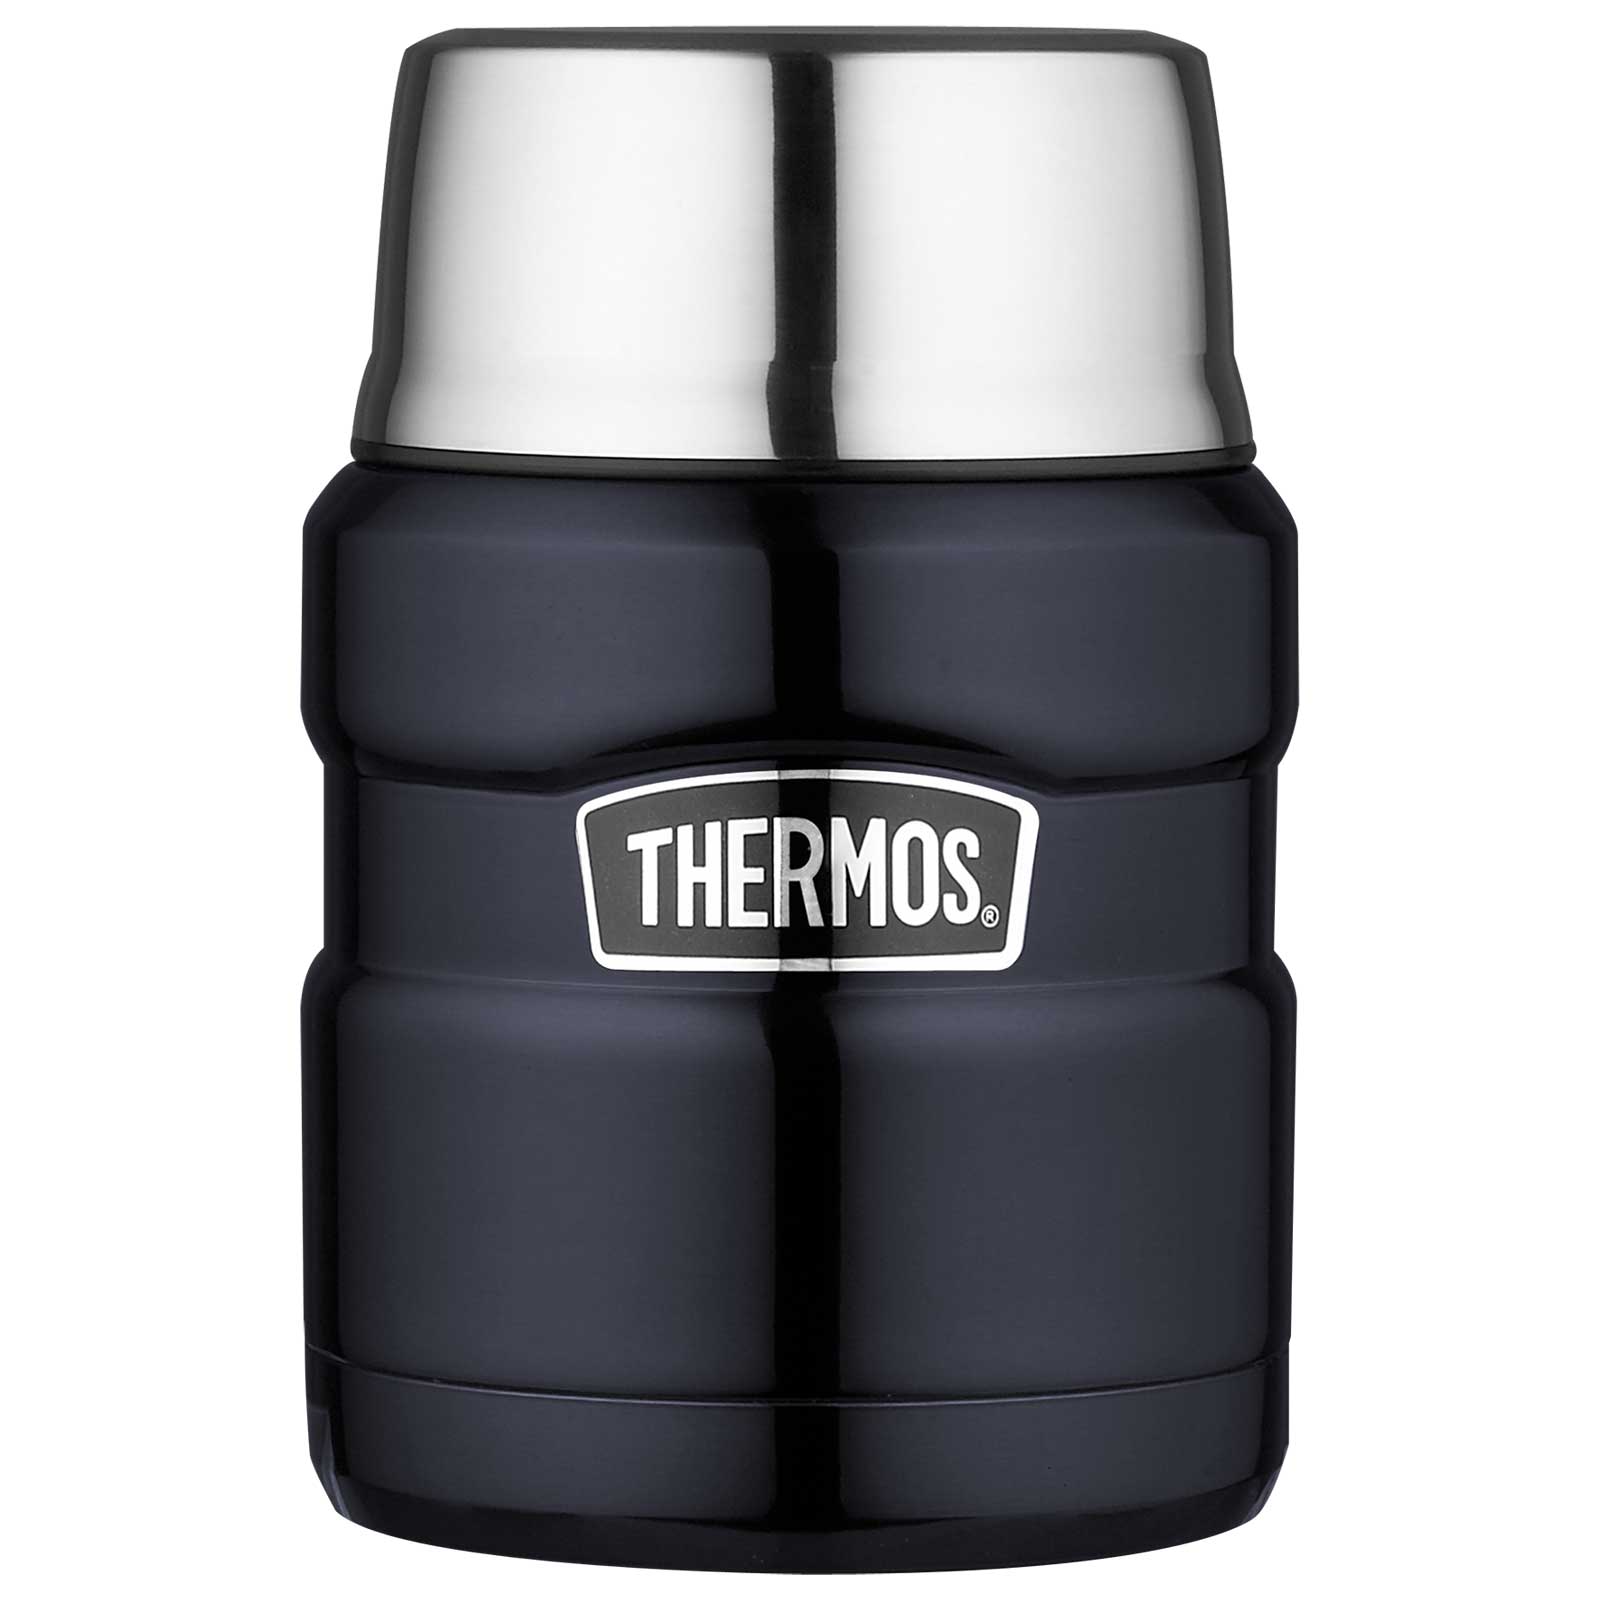 Produktbild von THERMOS® Stainless King Food Jar 0.47L Isolier-Speisegefäß - midnight blue polished